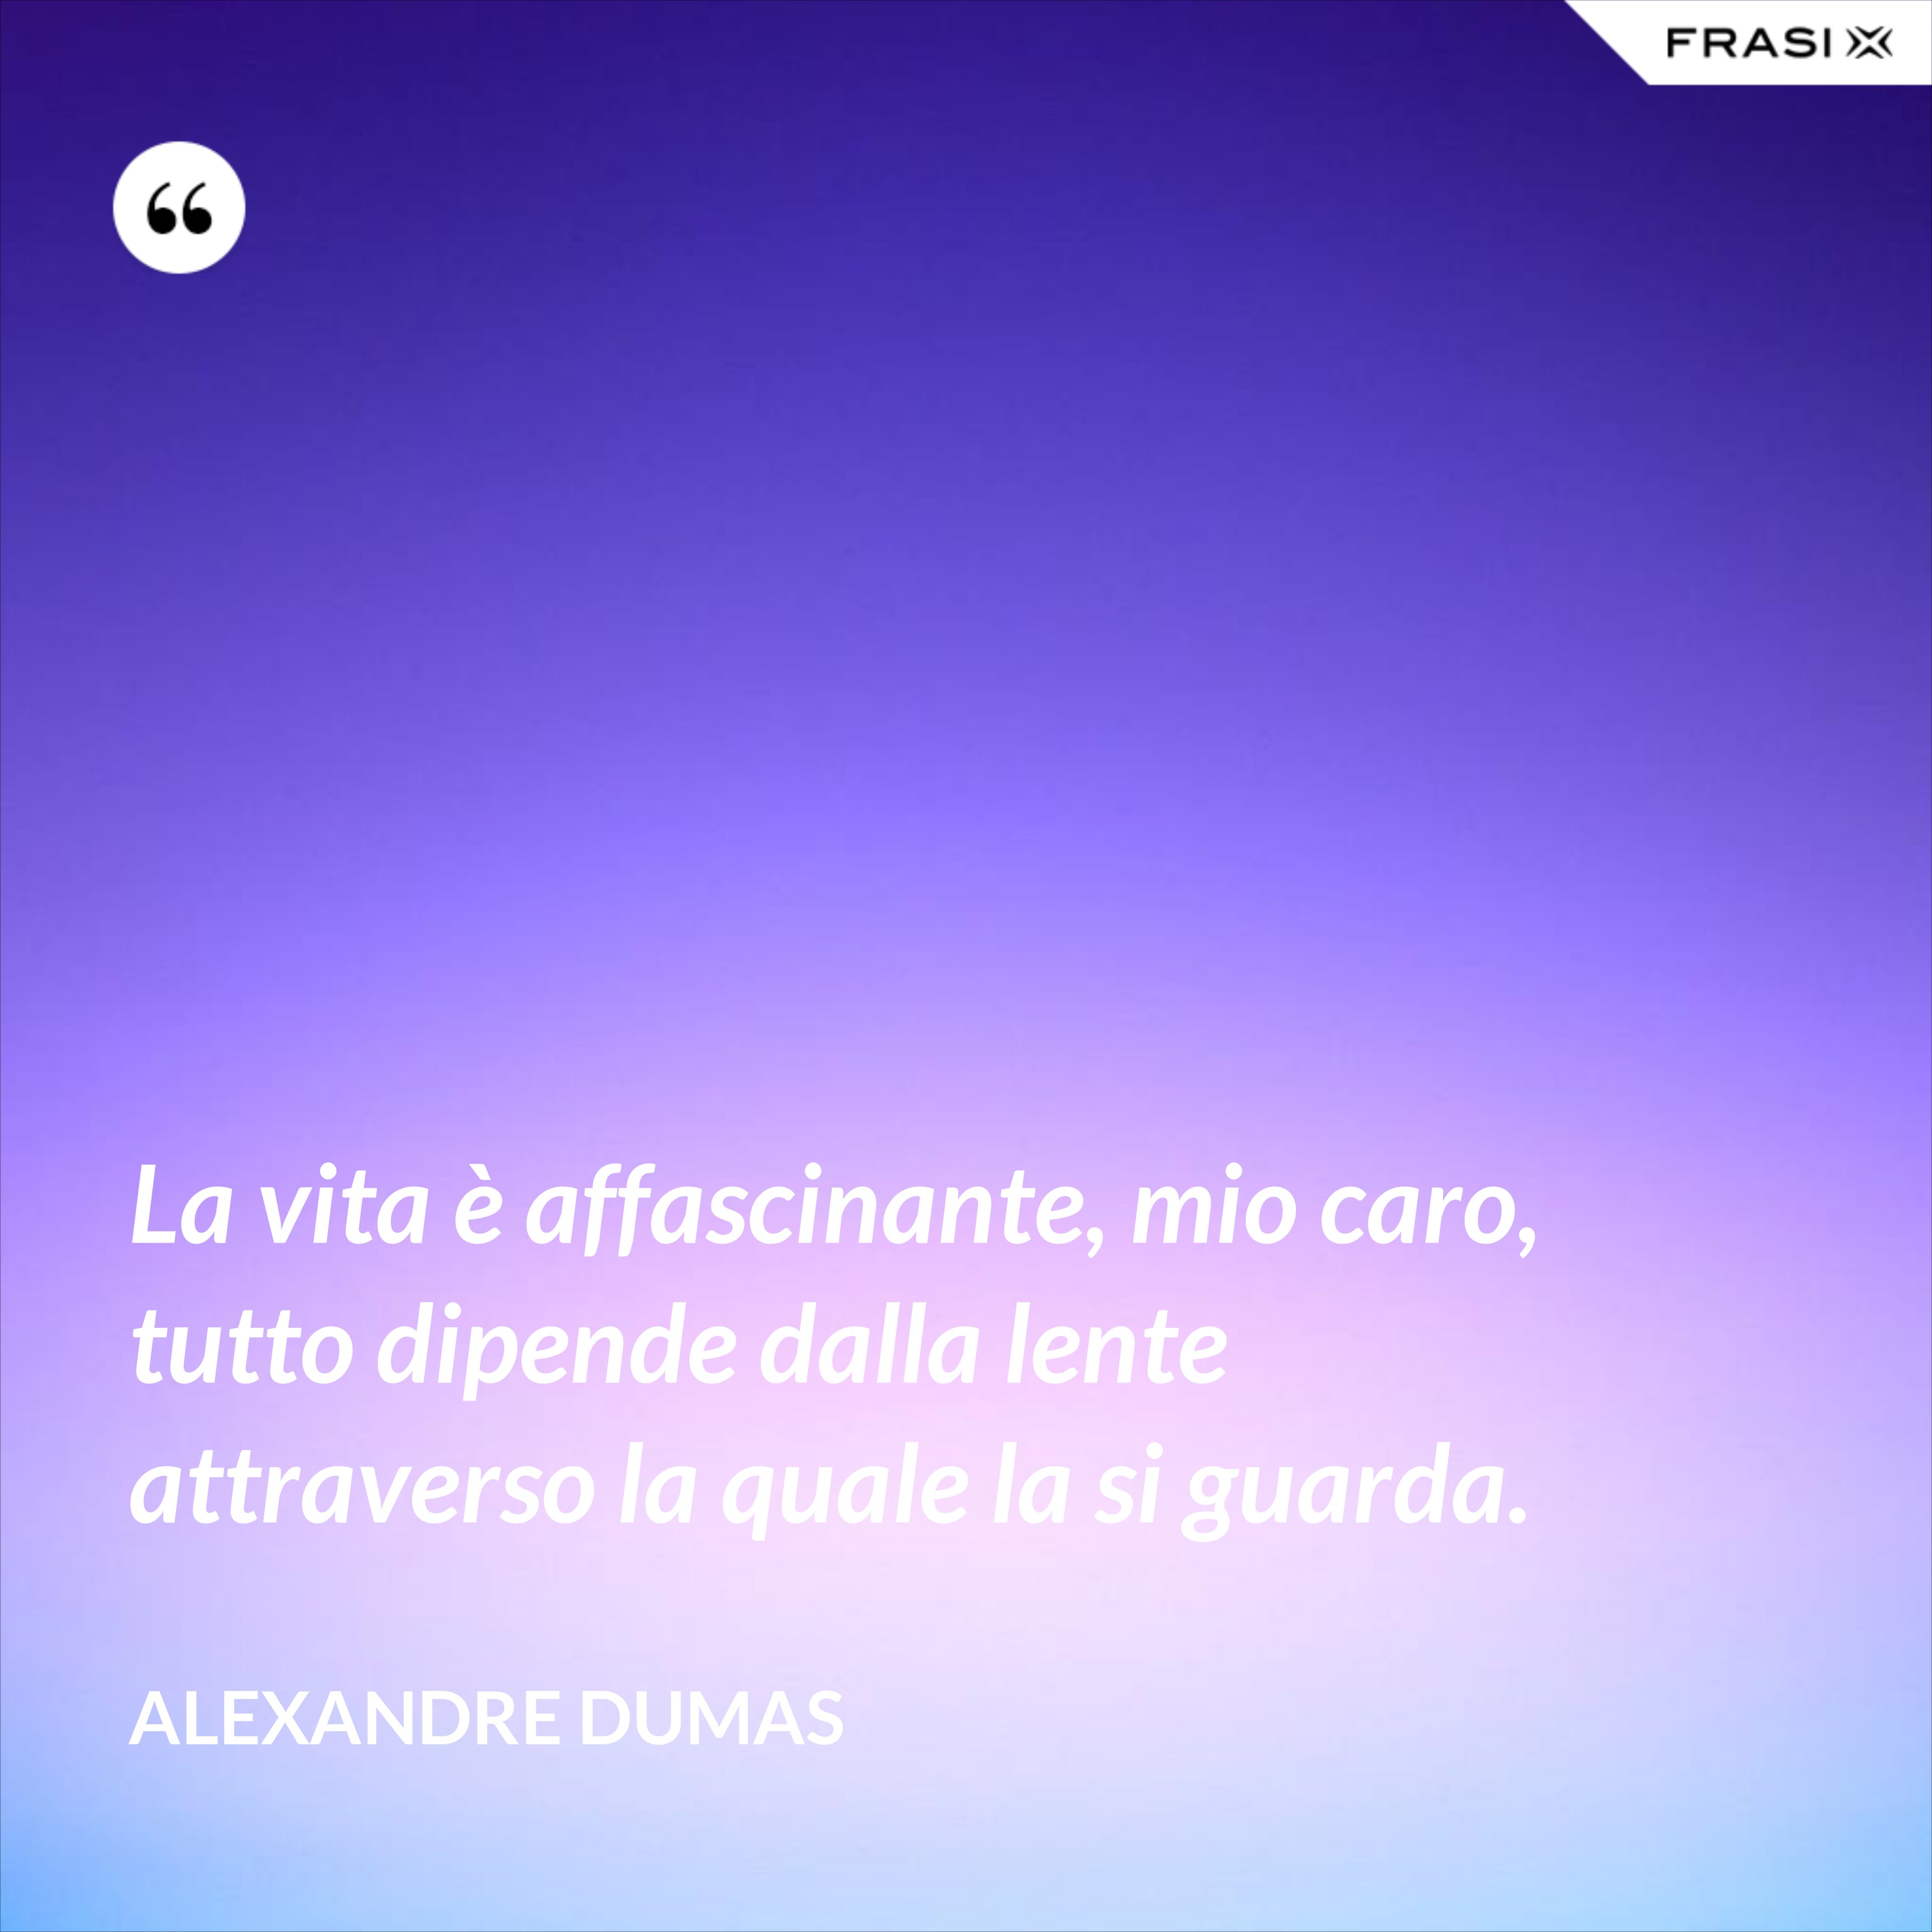 La vita è affascinante, mio caro, tutto dipende dalla lente attraverso la quale la si guarda. - Alexandre Dumas